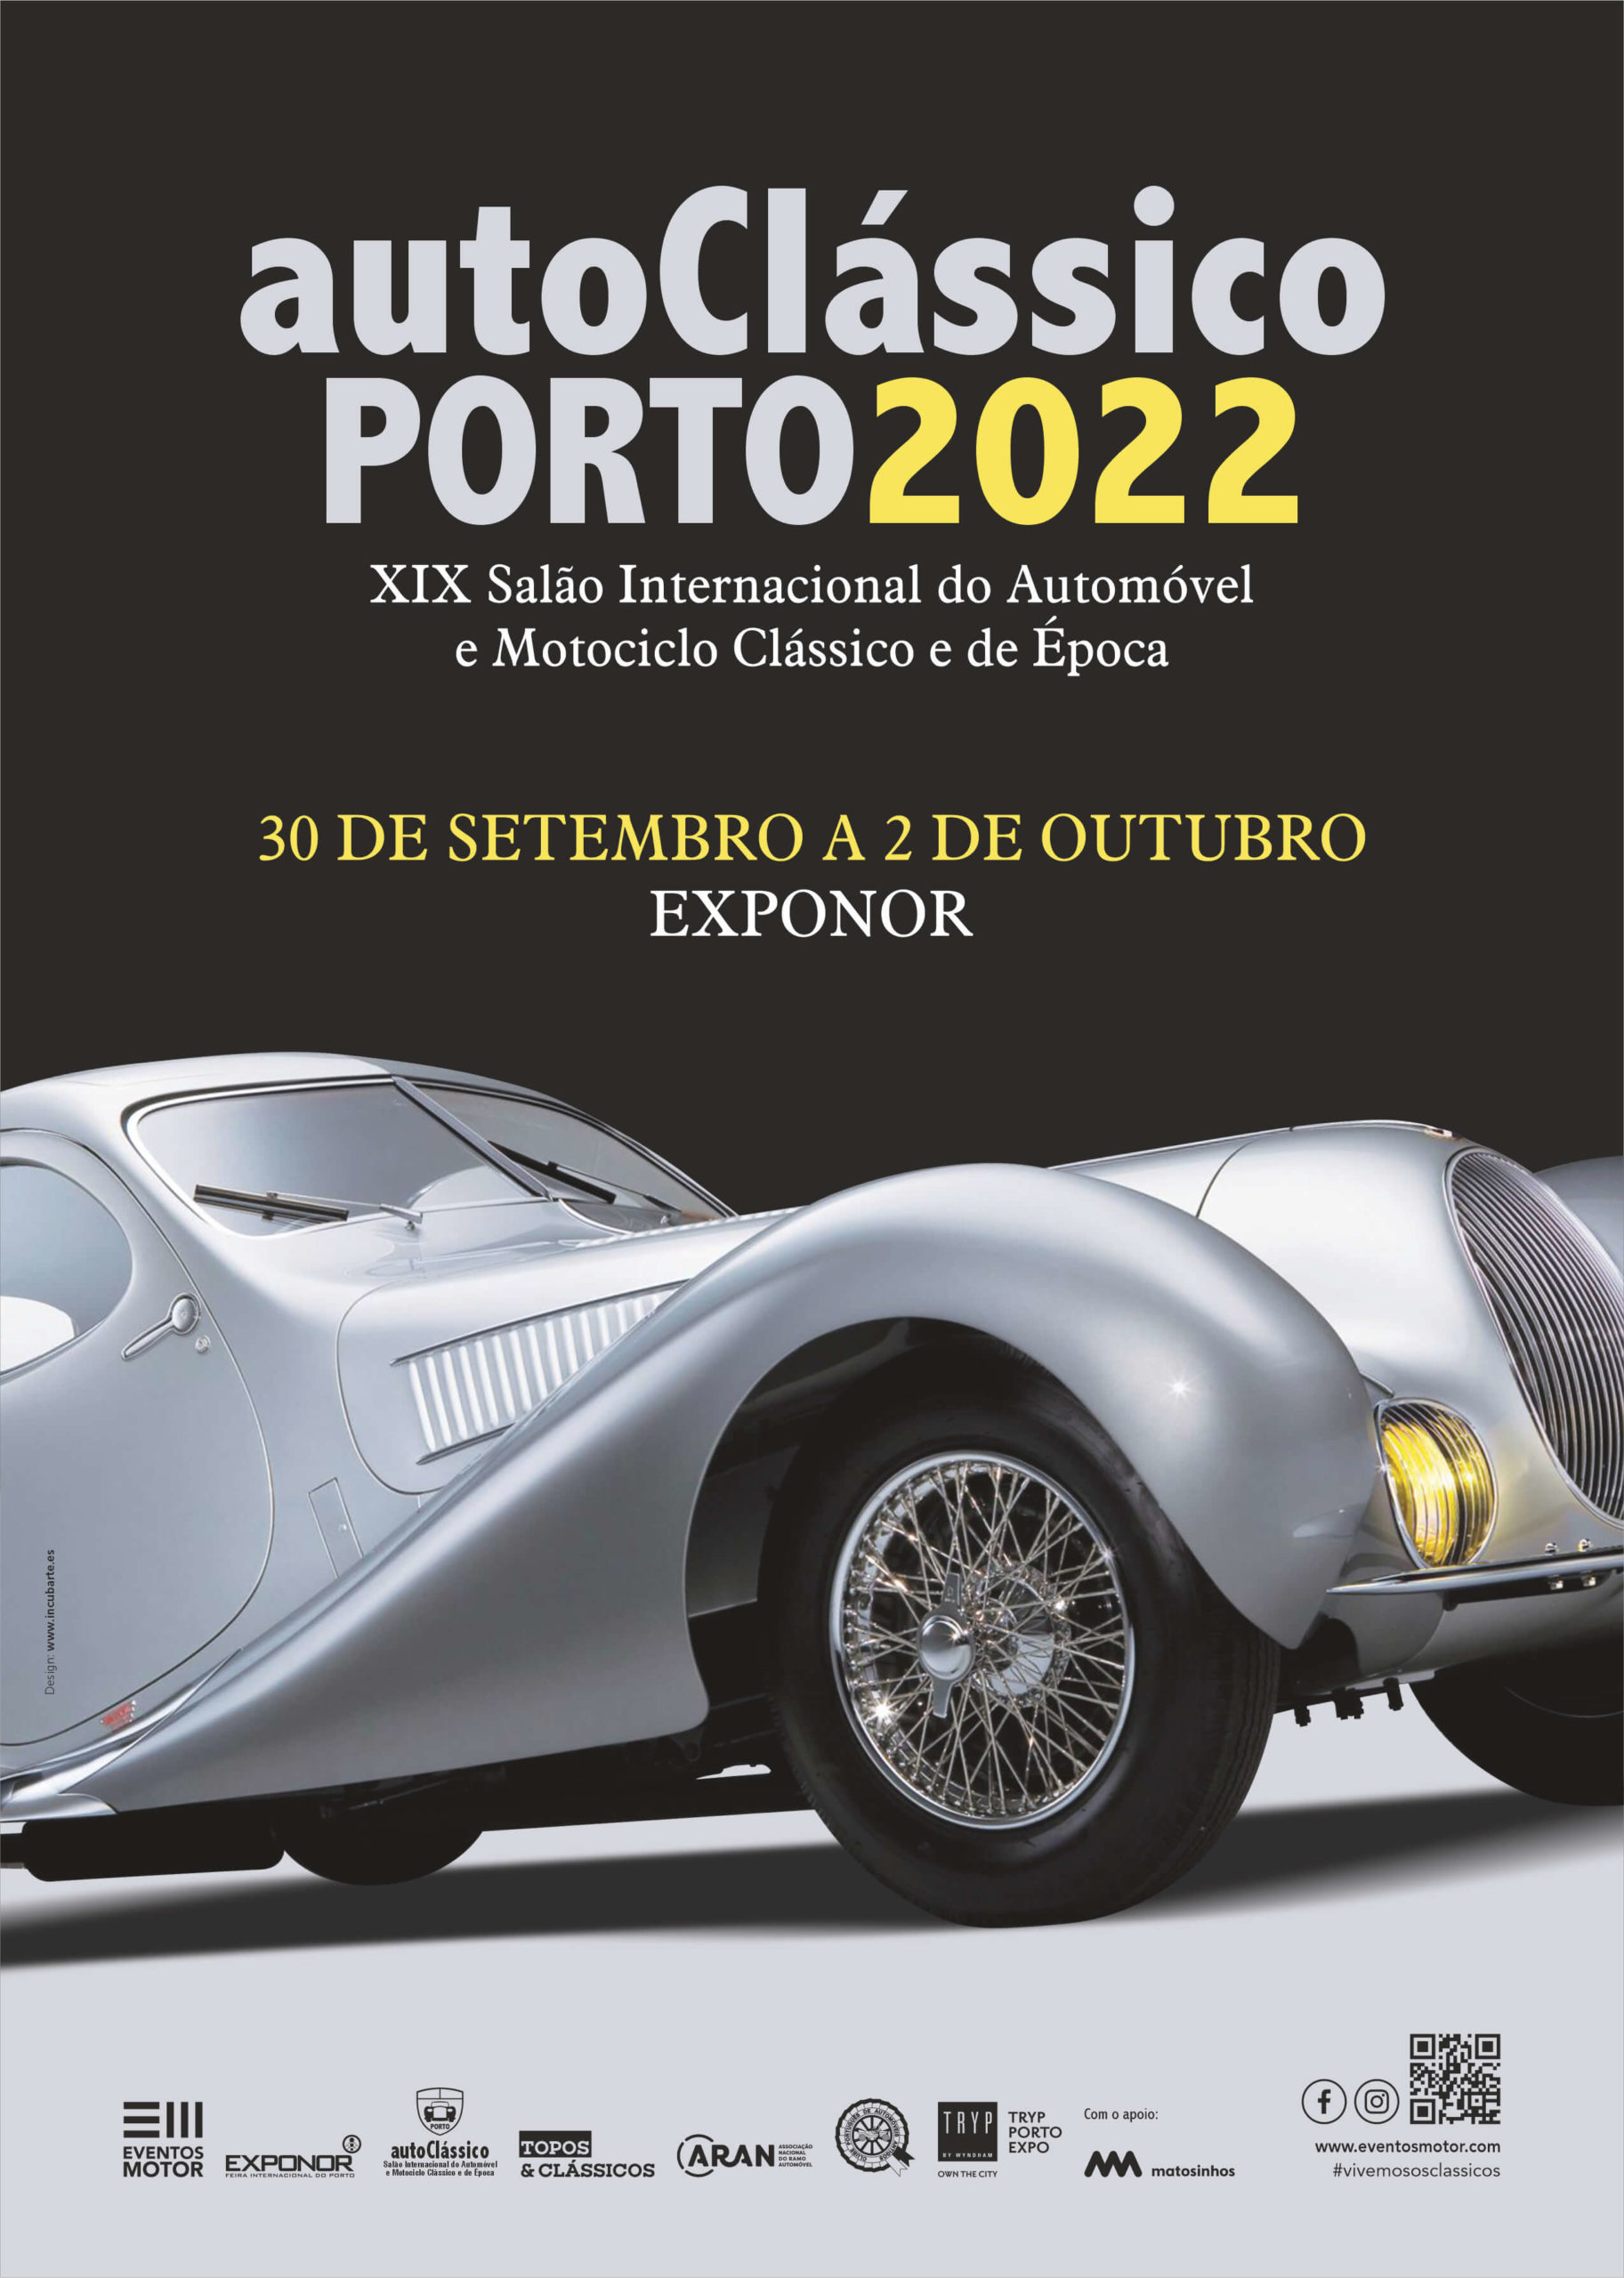 autoclassico Porto 2022